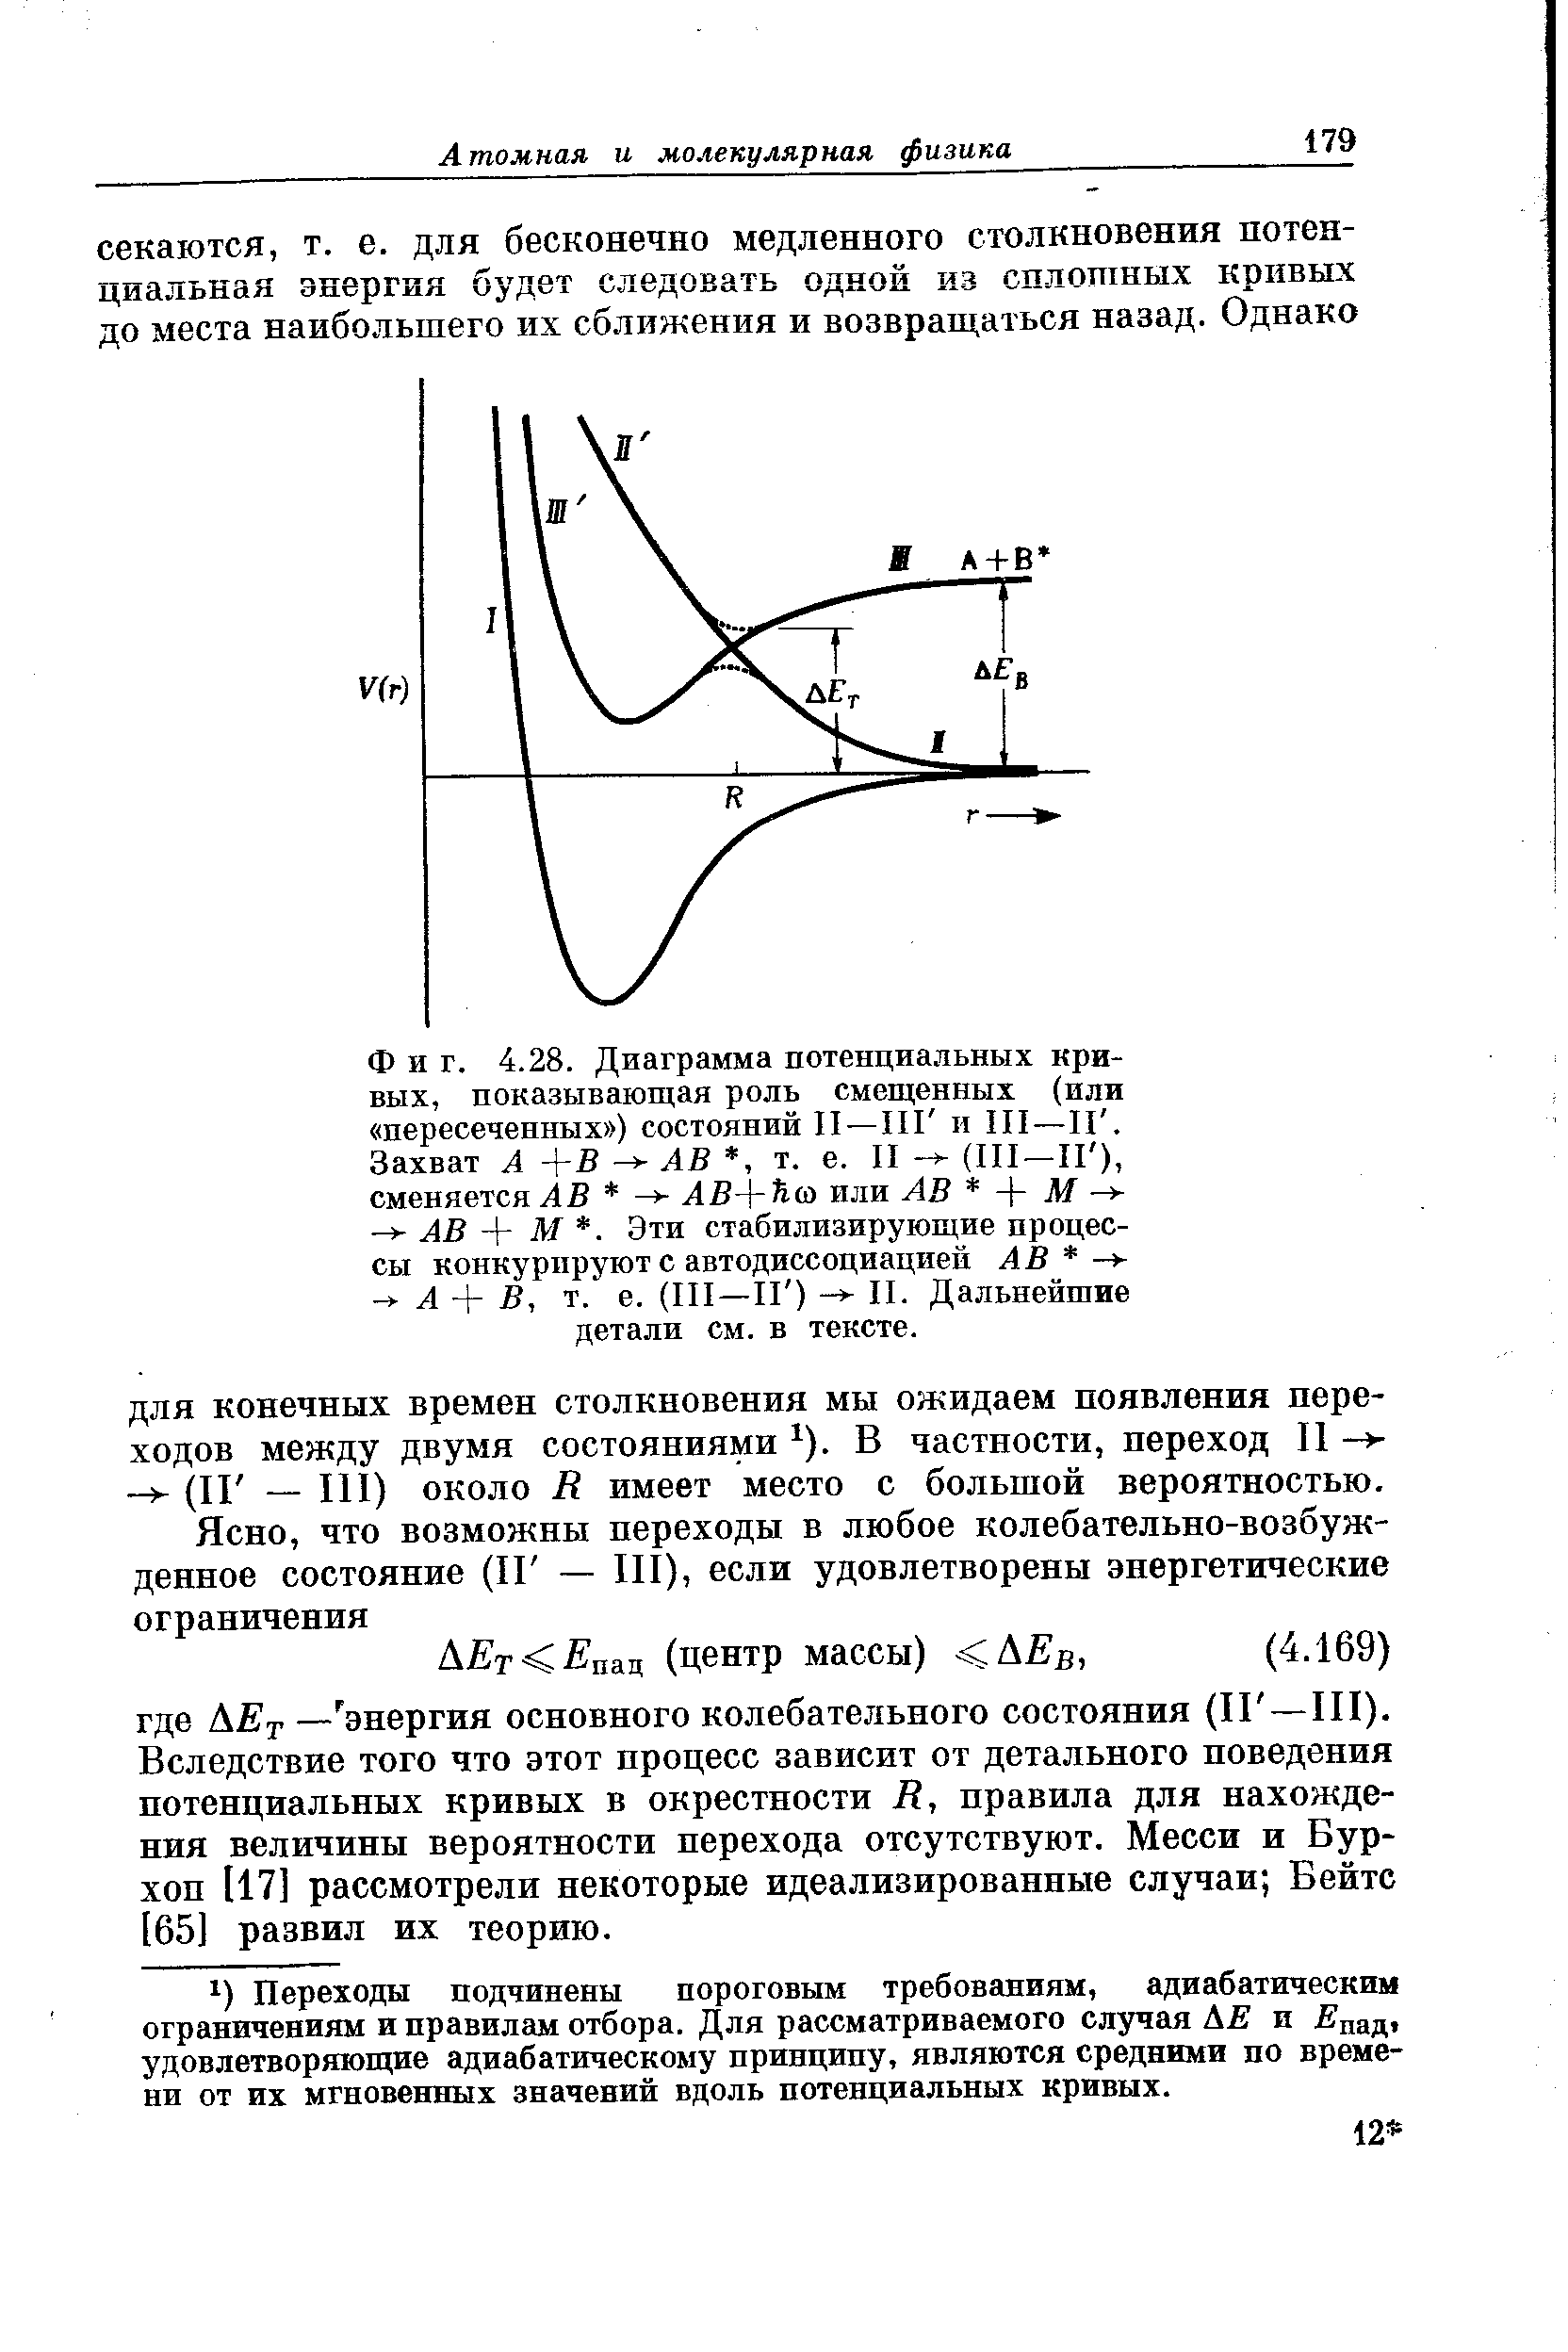 Фиг. 4.28. <a href="/info/130800">Диаграмма потенциа</a>.т1ьных кривых, показывающая роль смещенных (или пересеченных ) состояний II—ИГ и III—1Г.
